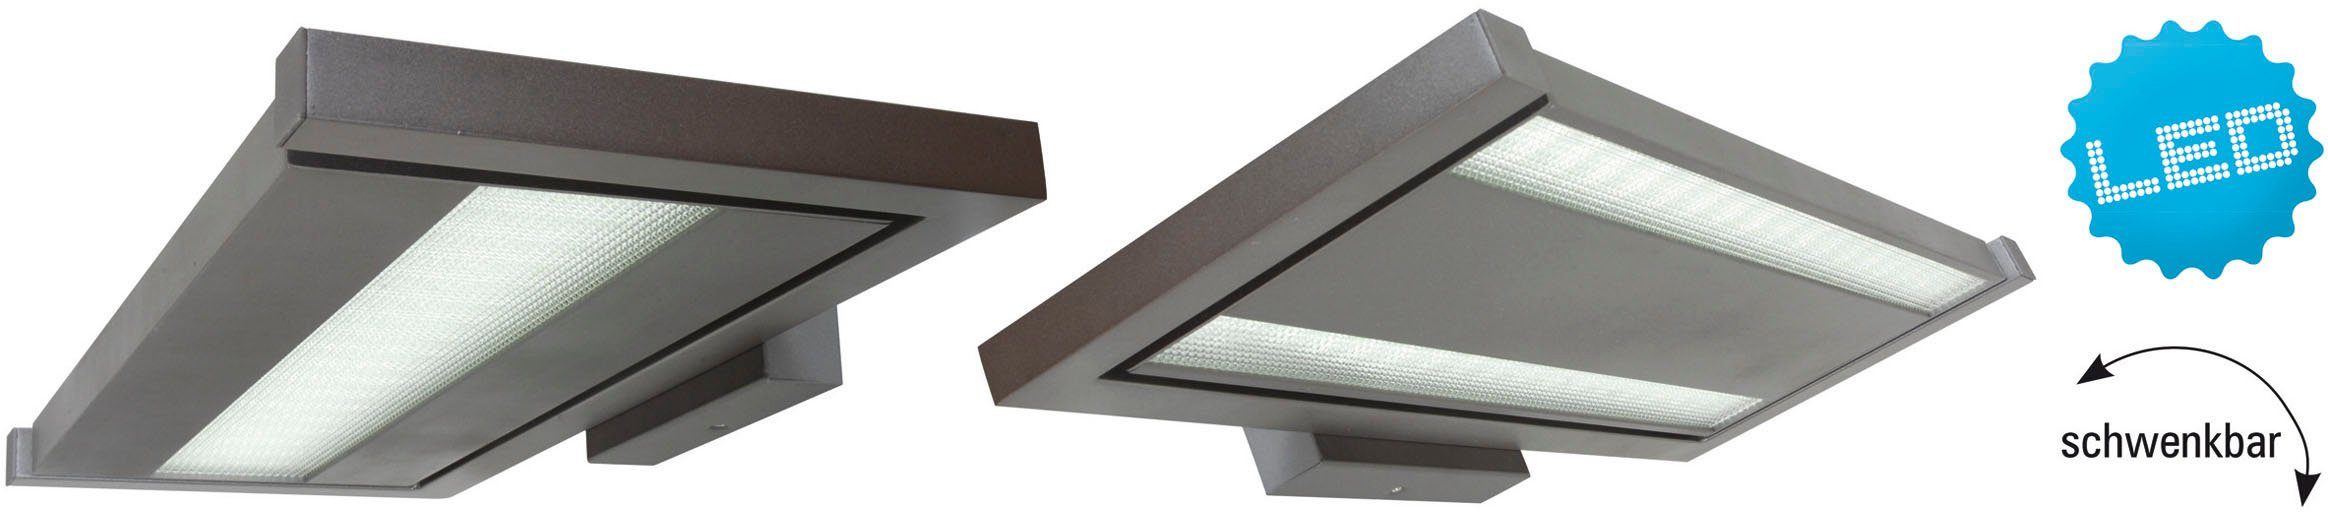 direkt/indirekt Bennet, Licht LED Büro/Arbeitszimmer fest Aluguss grau Neutralweiß, näve Wandleuchte integriert, LED schwenkbar